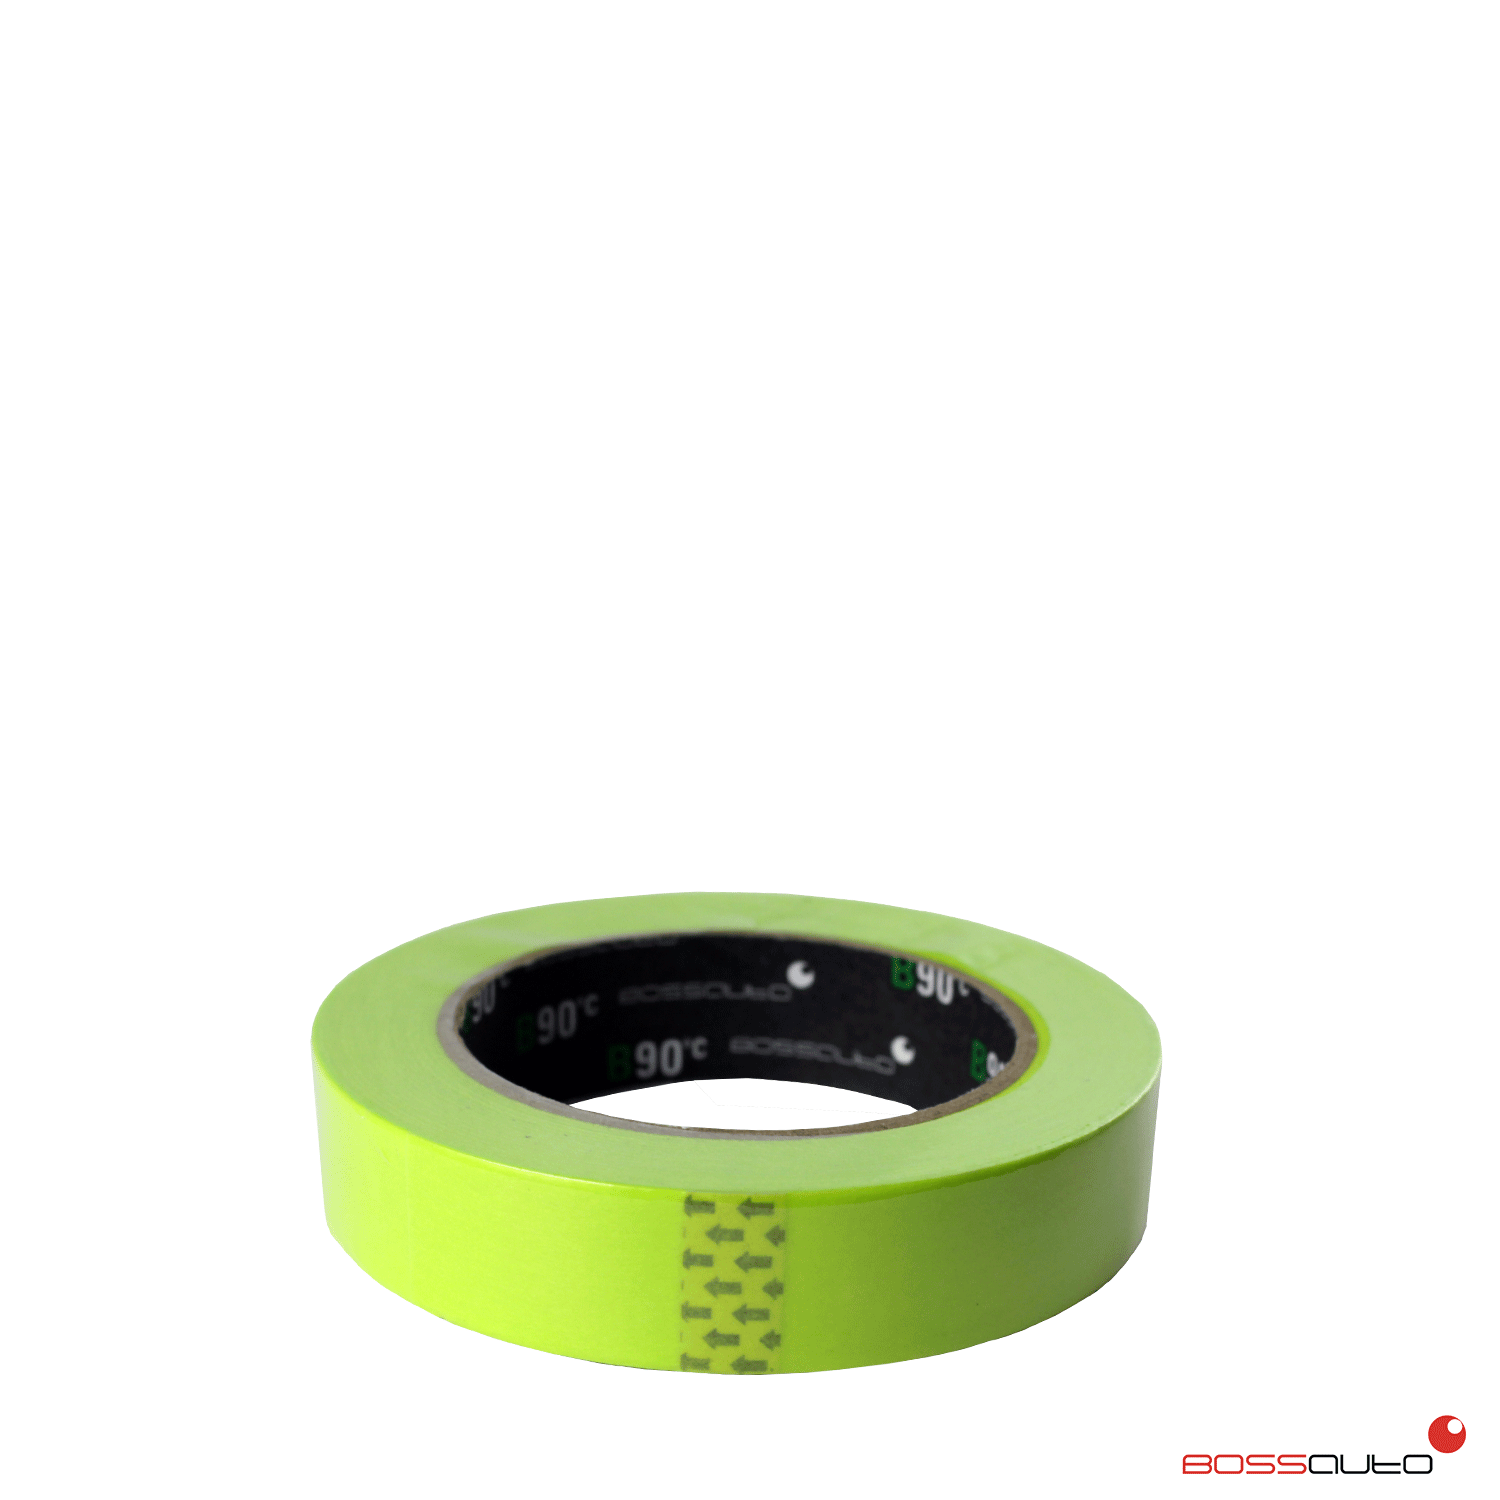 Prémiová maskovacia páska zelená vodeodolná 19mm x 50m 90°C